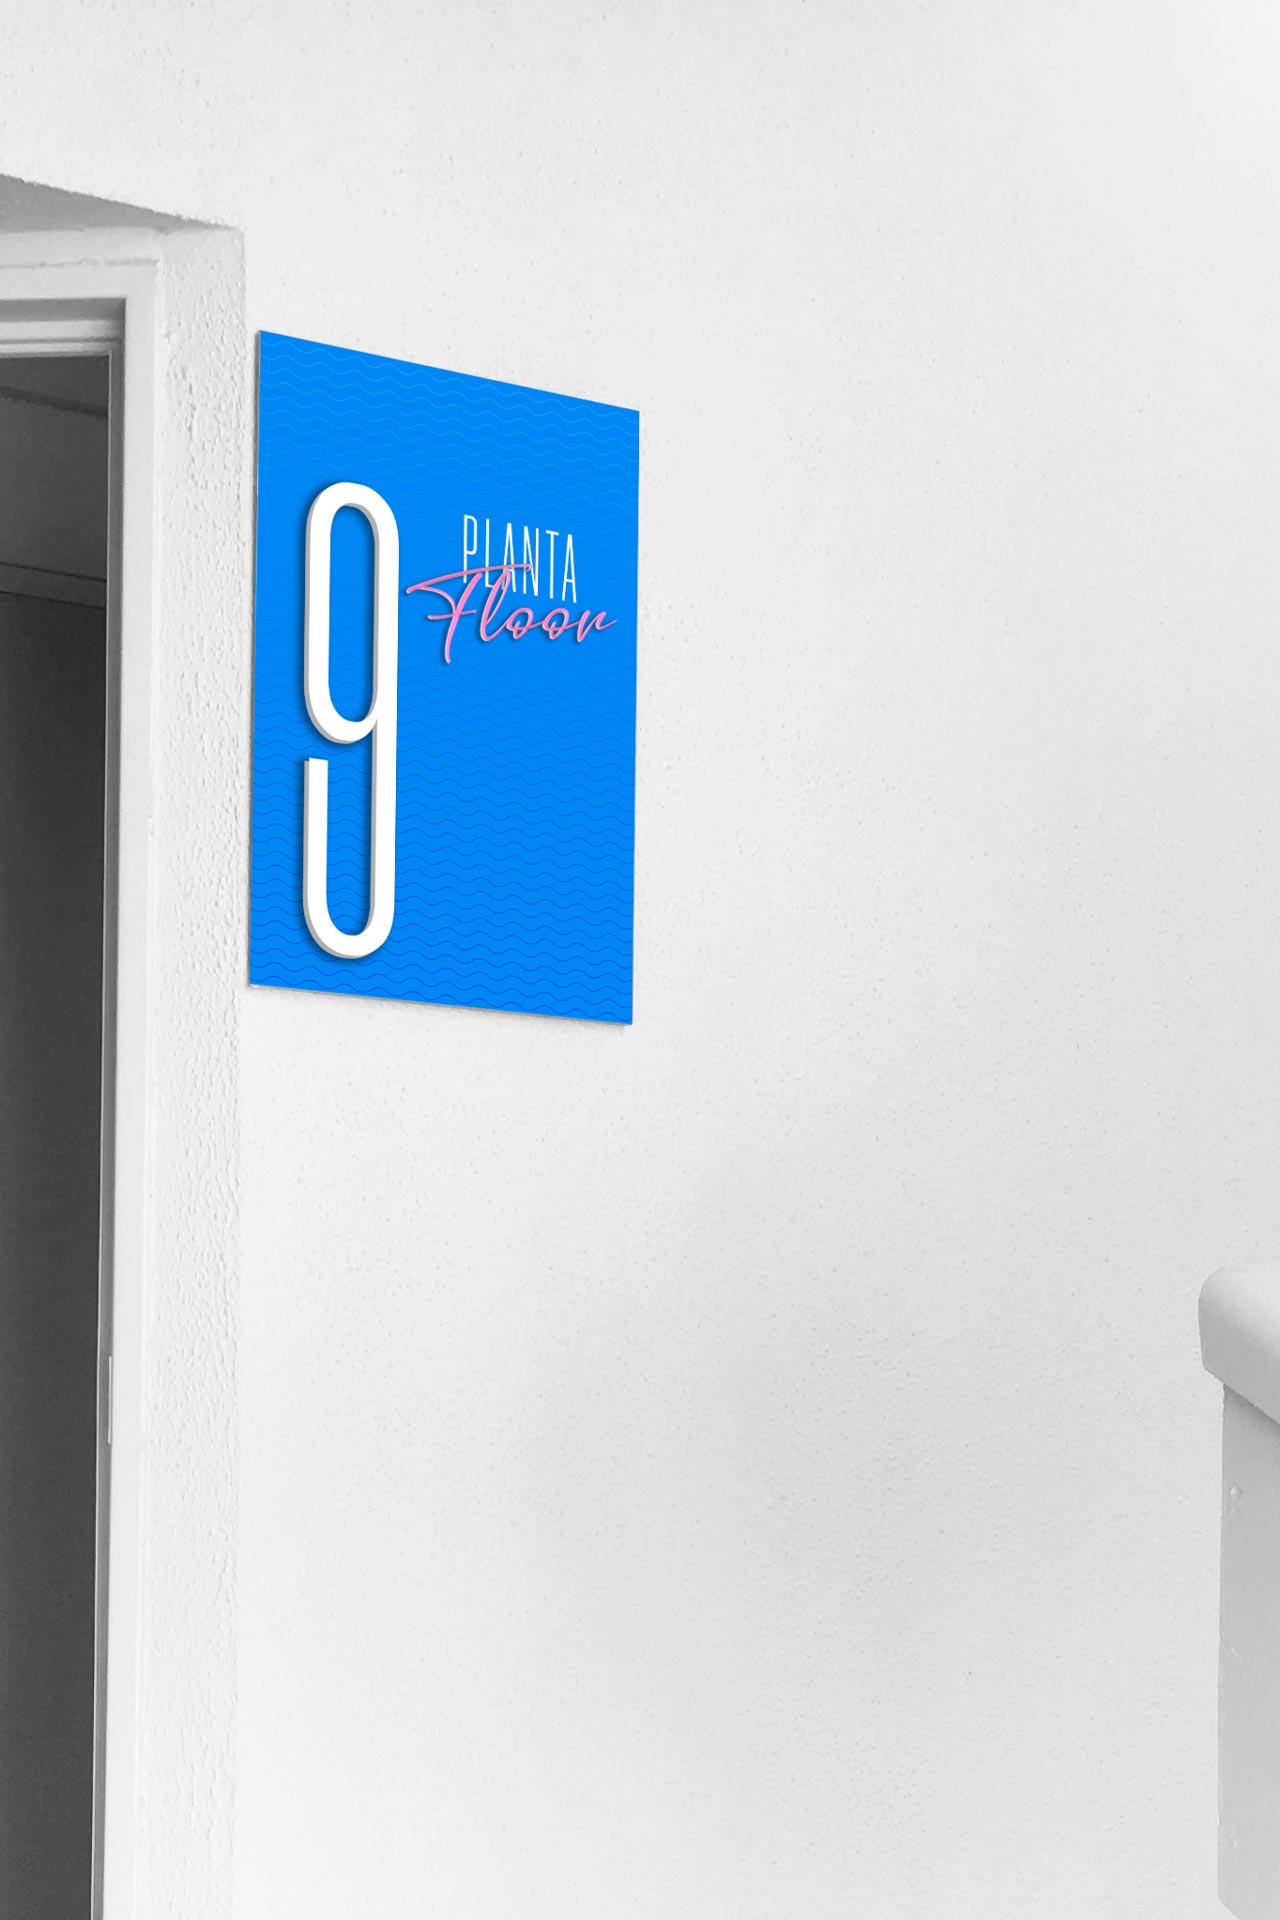 Señalética del Hotel Hovima Costa Adeje: señal identificativa con número de planta en la zona de la escalera.